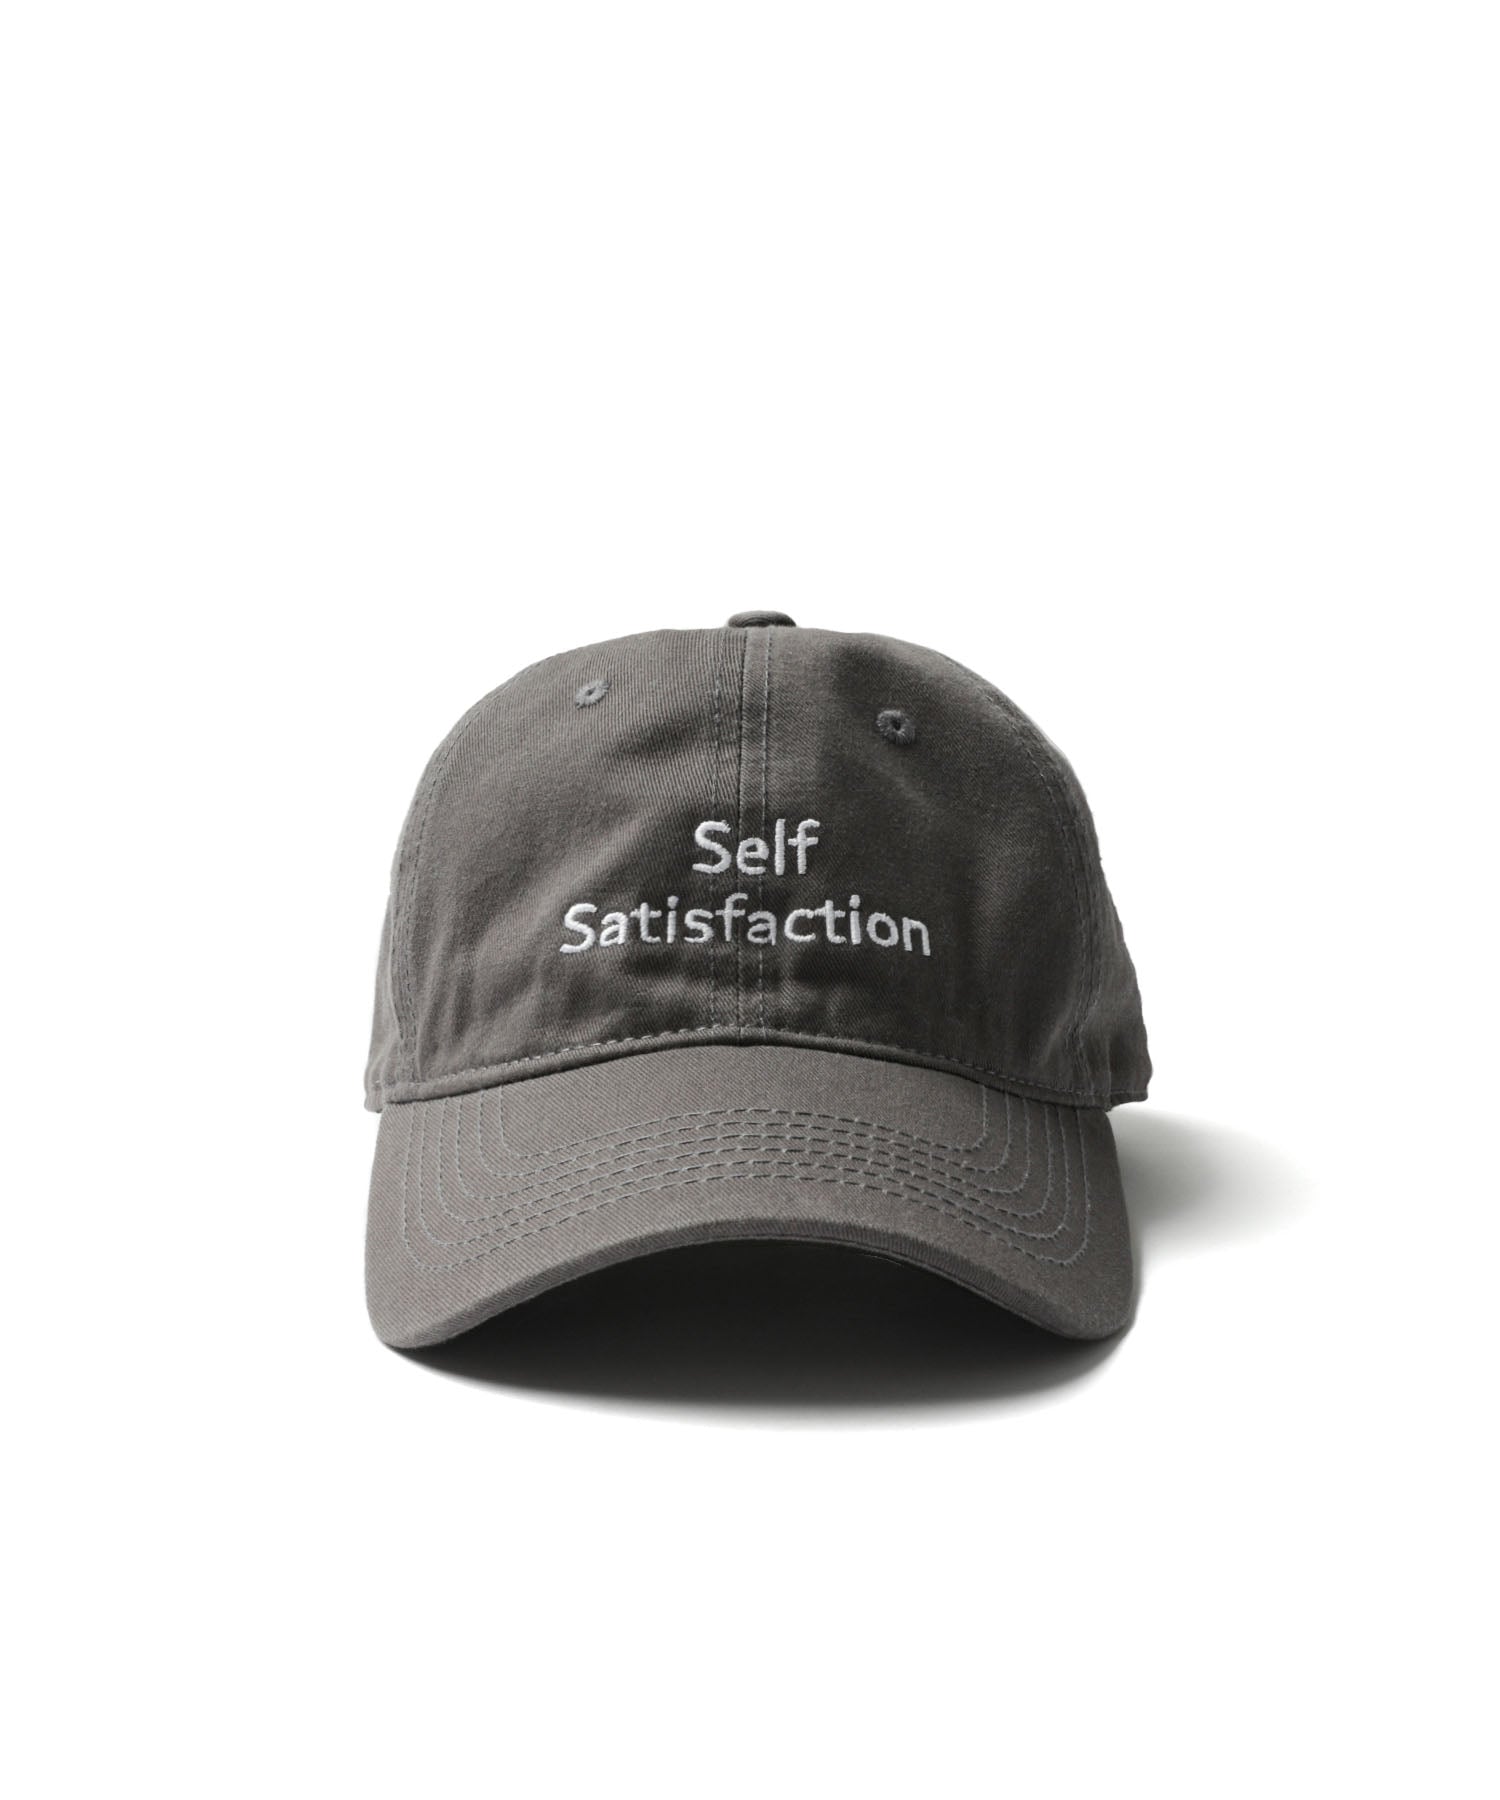 Self Satisfaction Cap